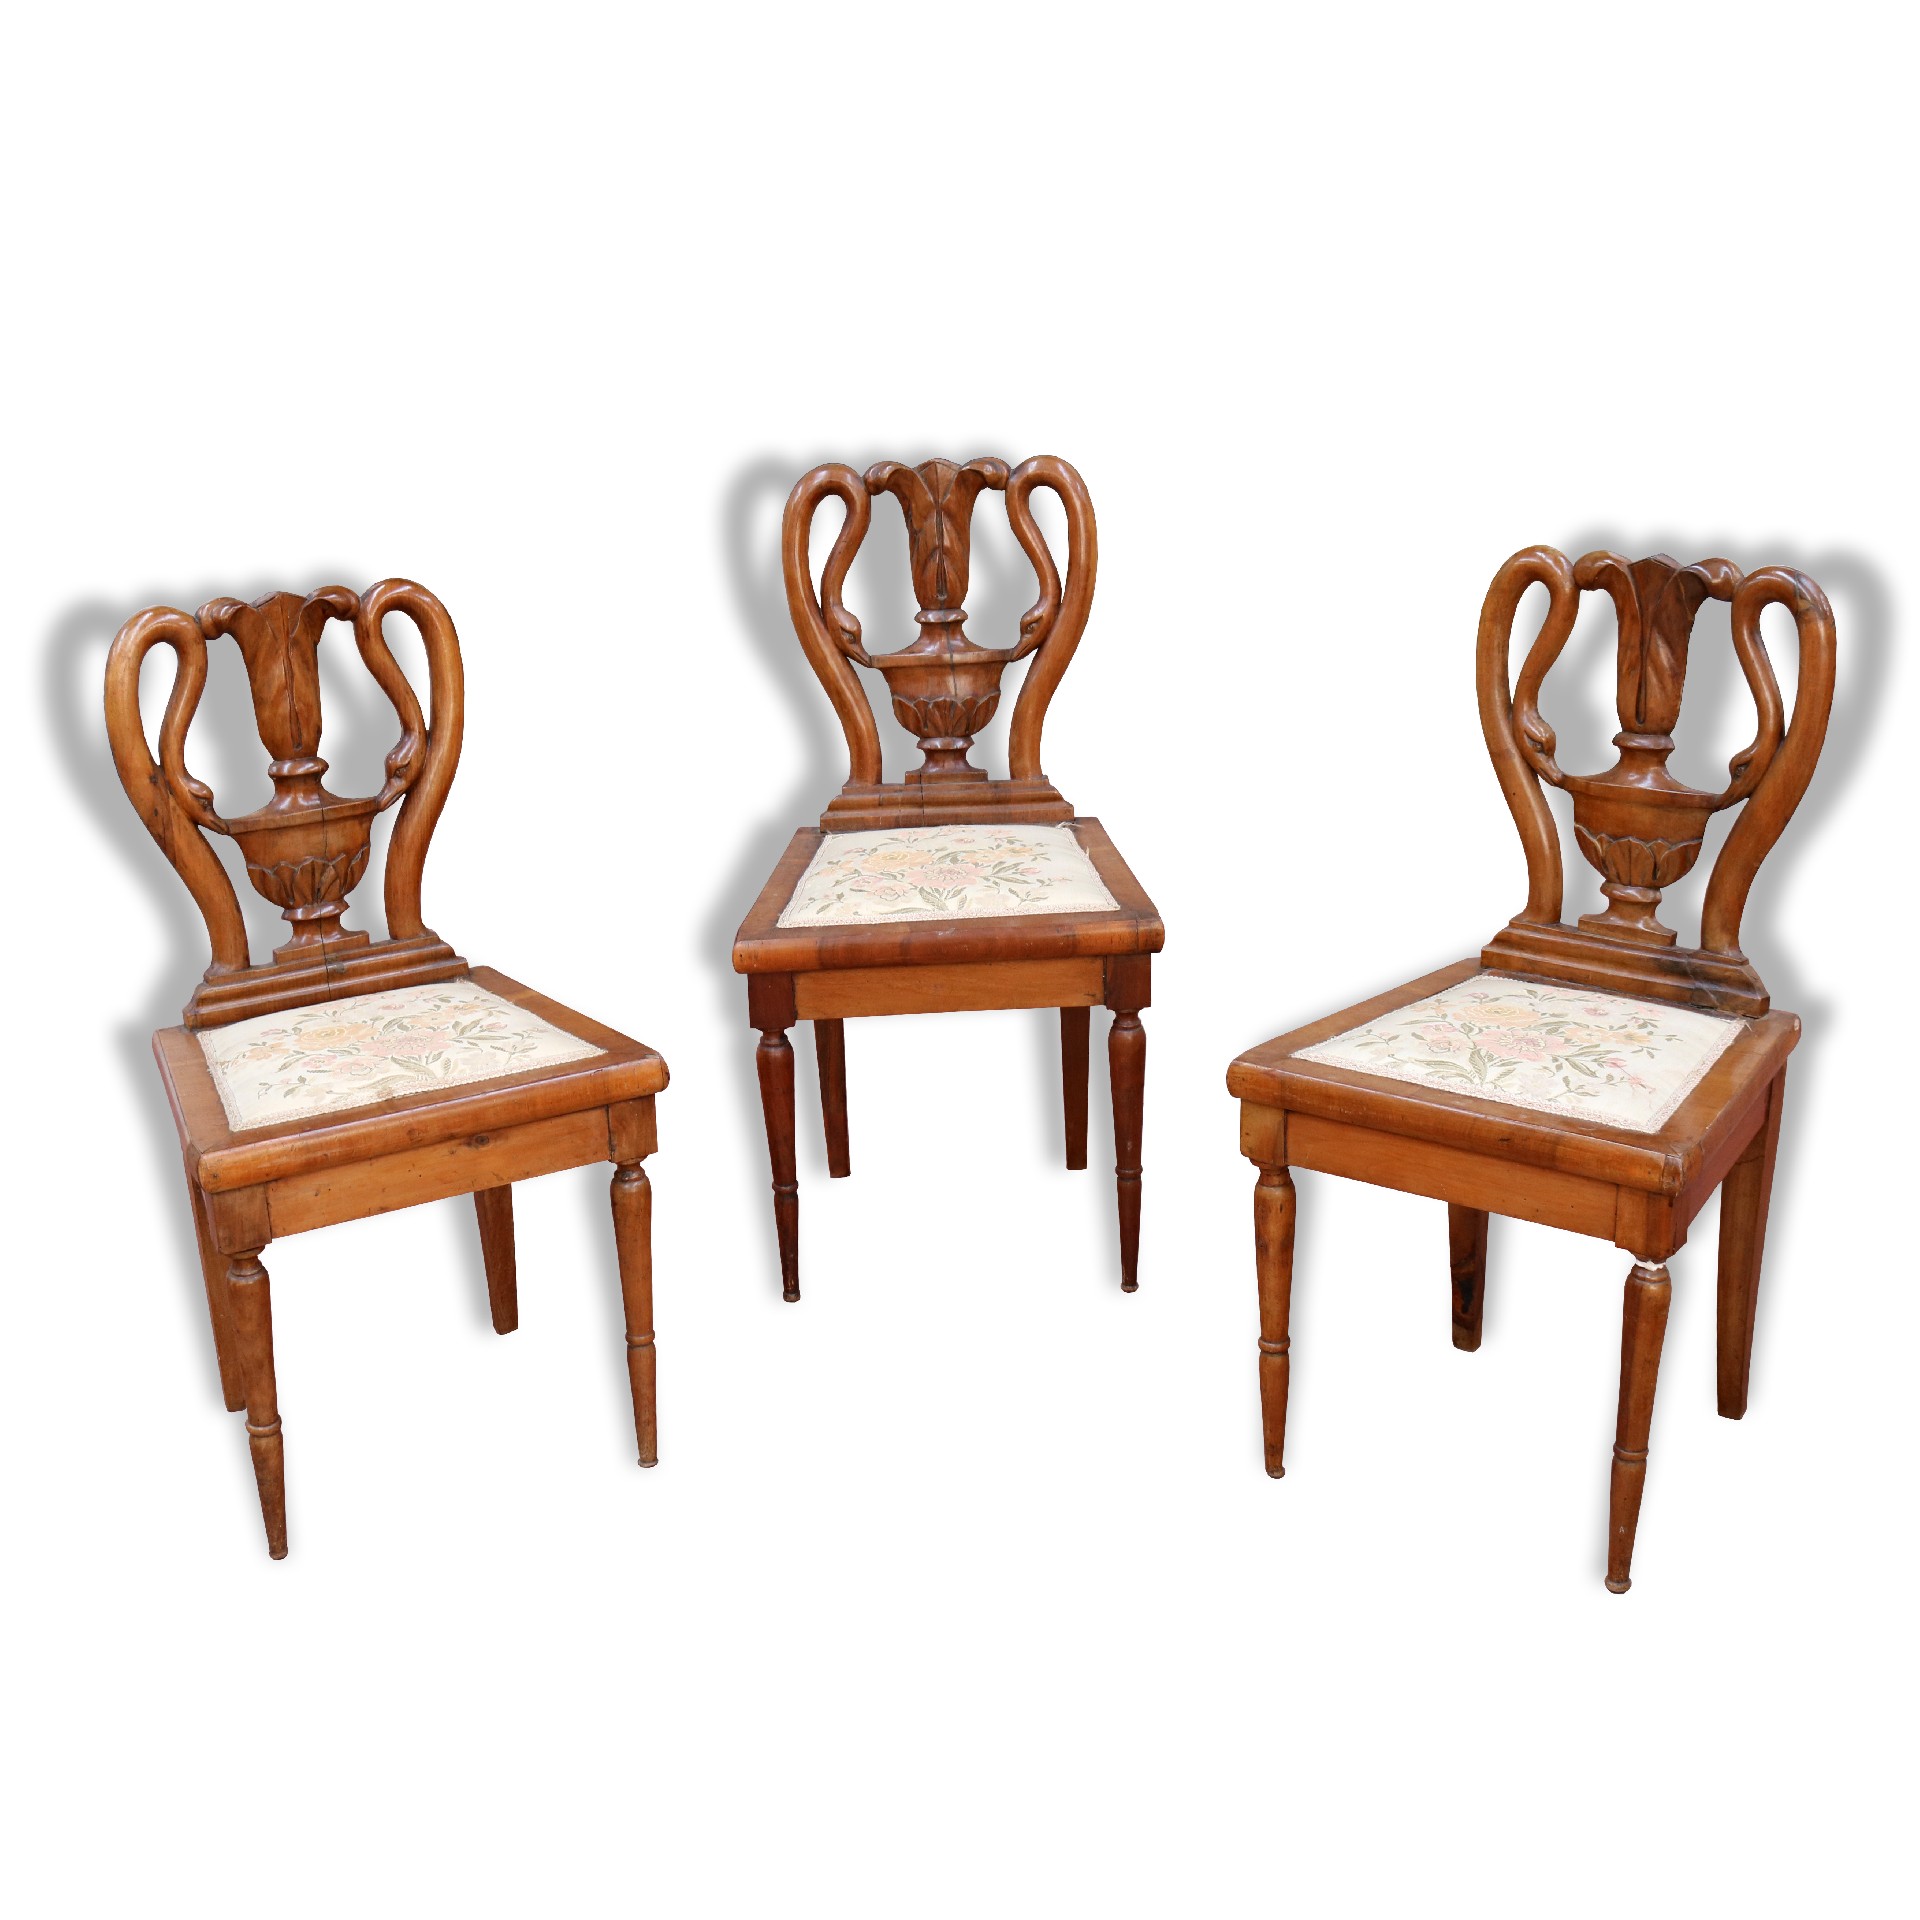 Tre sedie in legno antiche. - Salotti e Sedie - Mobili antichi - Prodotti - Antichità Fiorillo